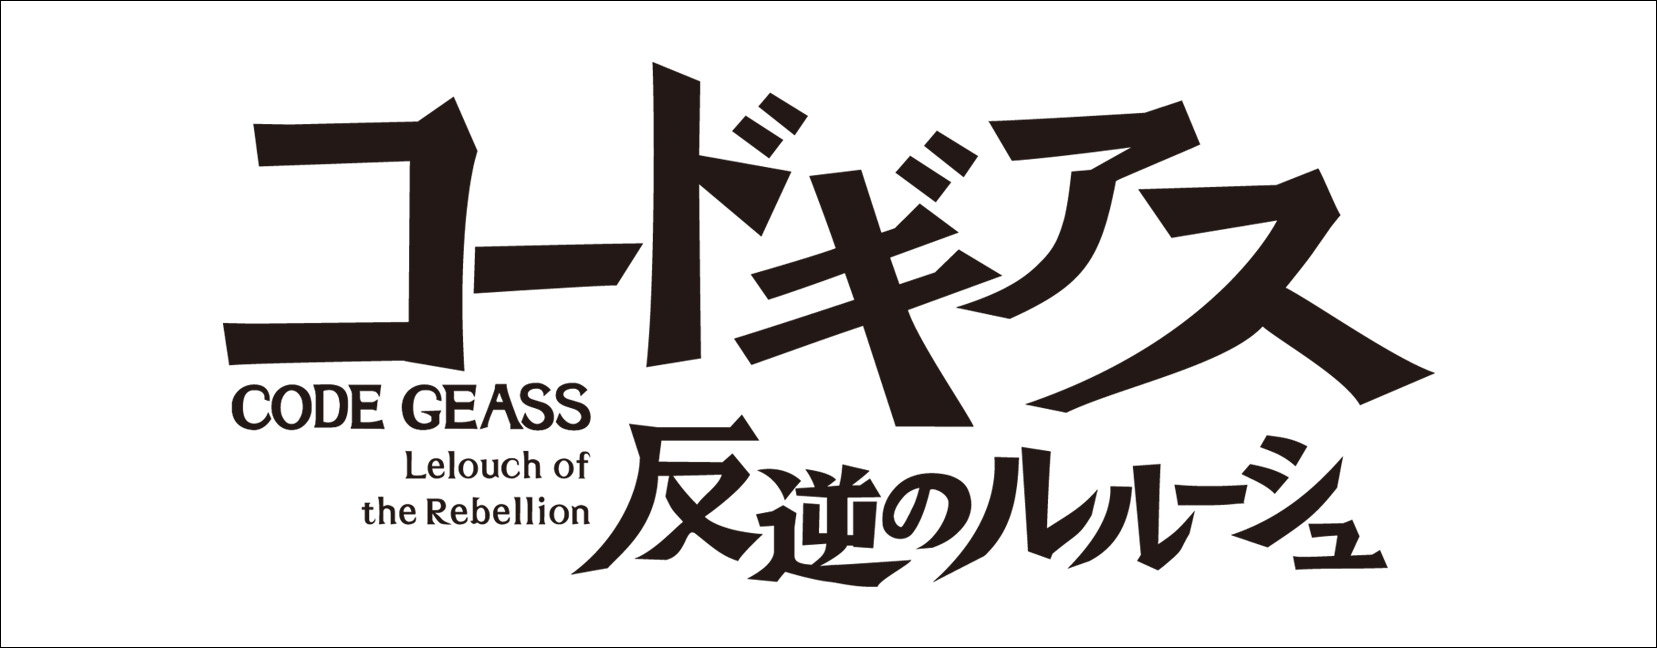 Sega 音ゲーピアノコンサート Ver Chunithm Vol 1 イベントなど ヤマハミュージックエンタテインメントホールディングス